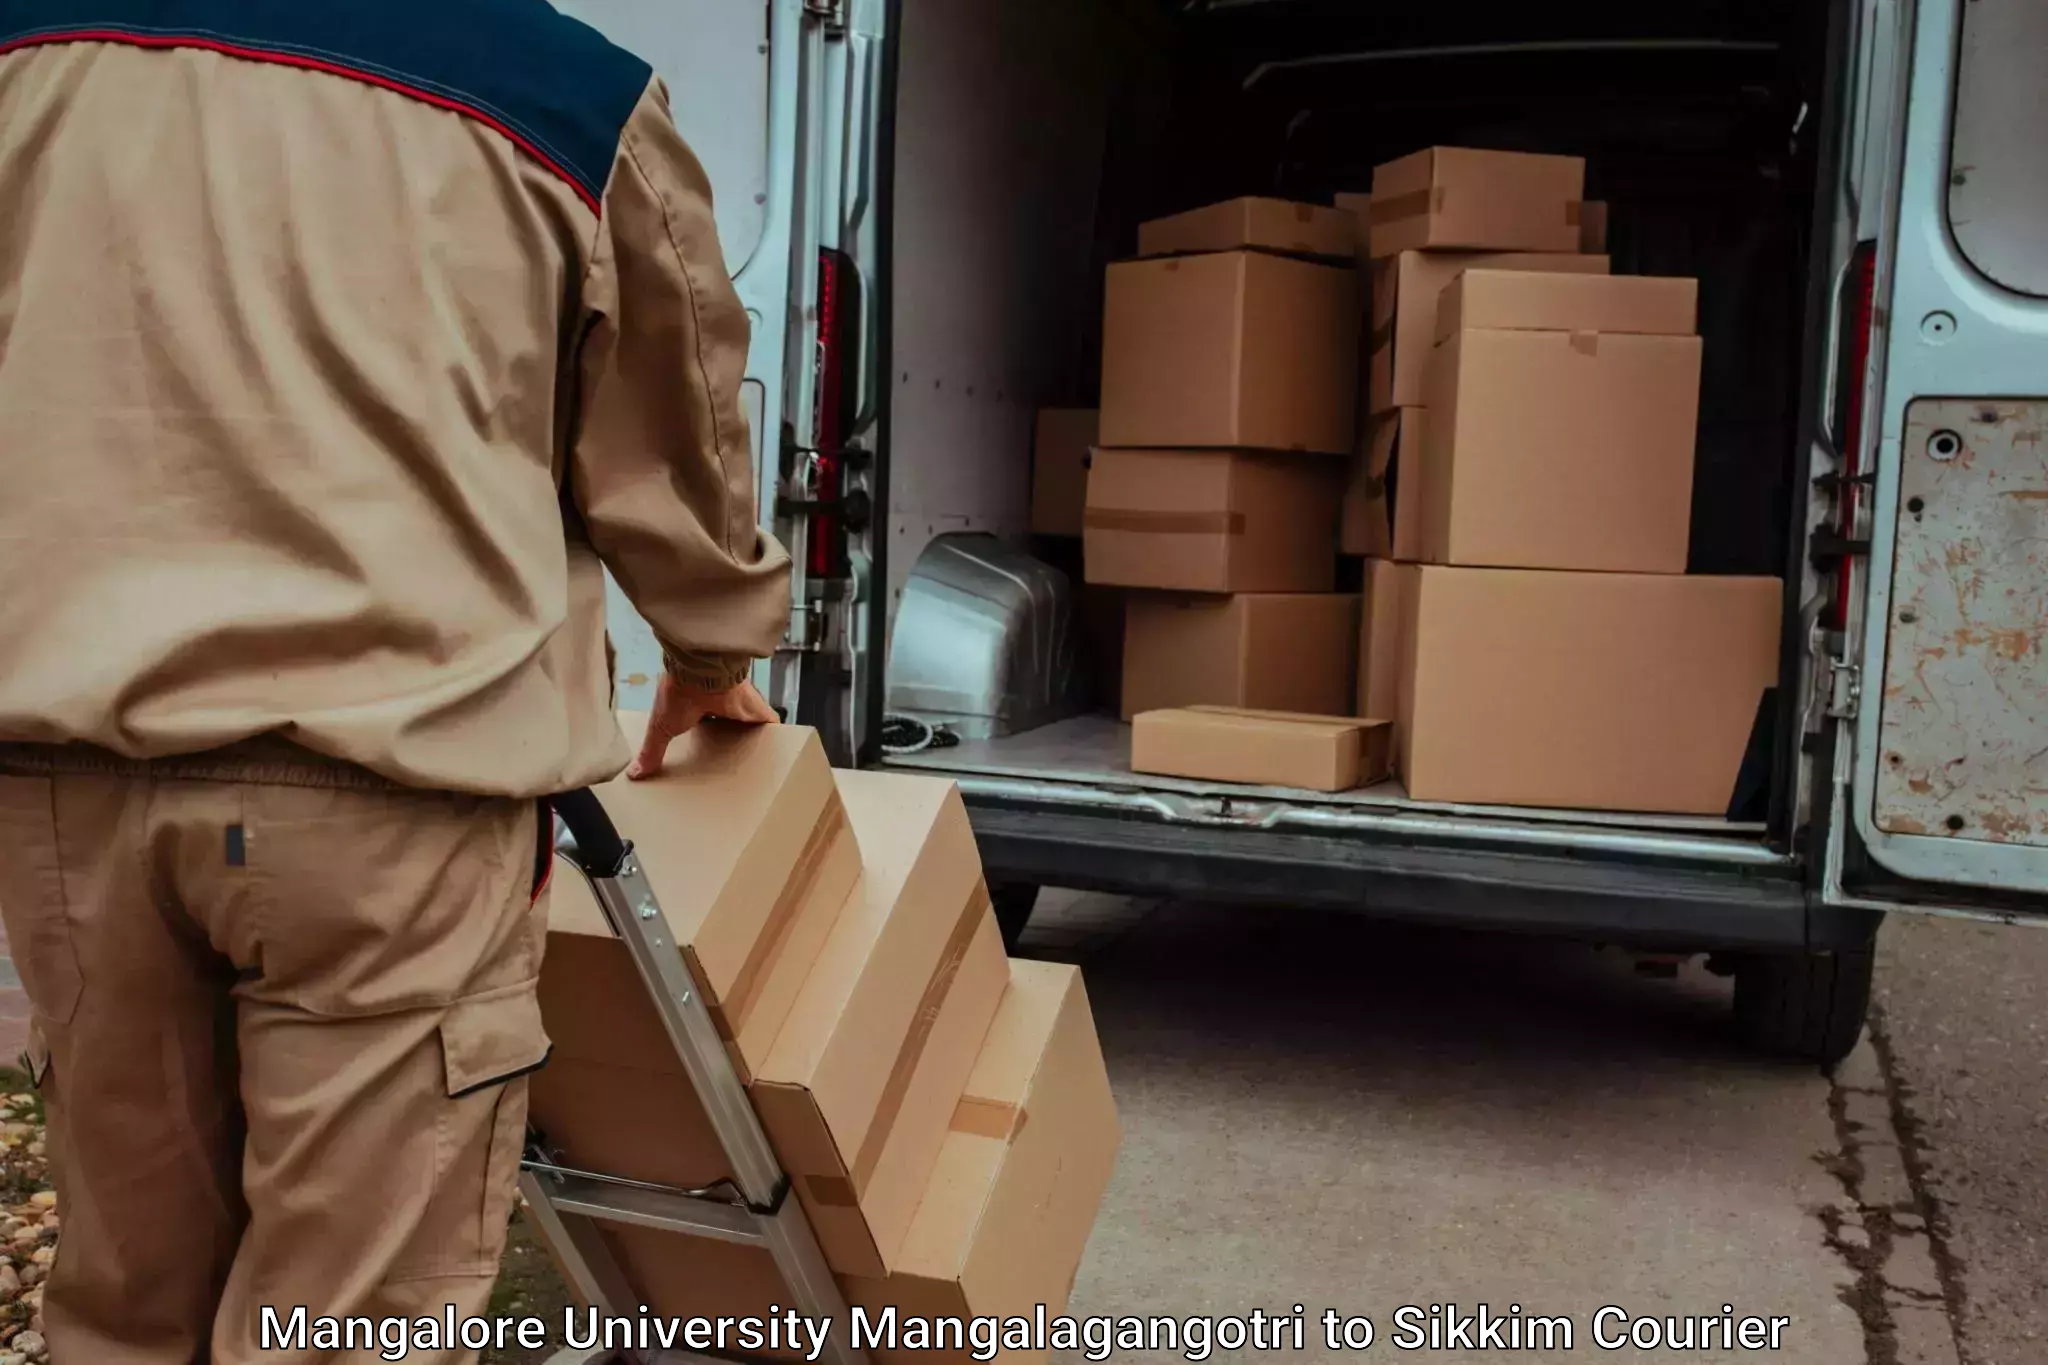 Household moving experts Mangalore University Mangalagangotri to West Sikkim